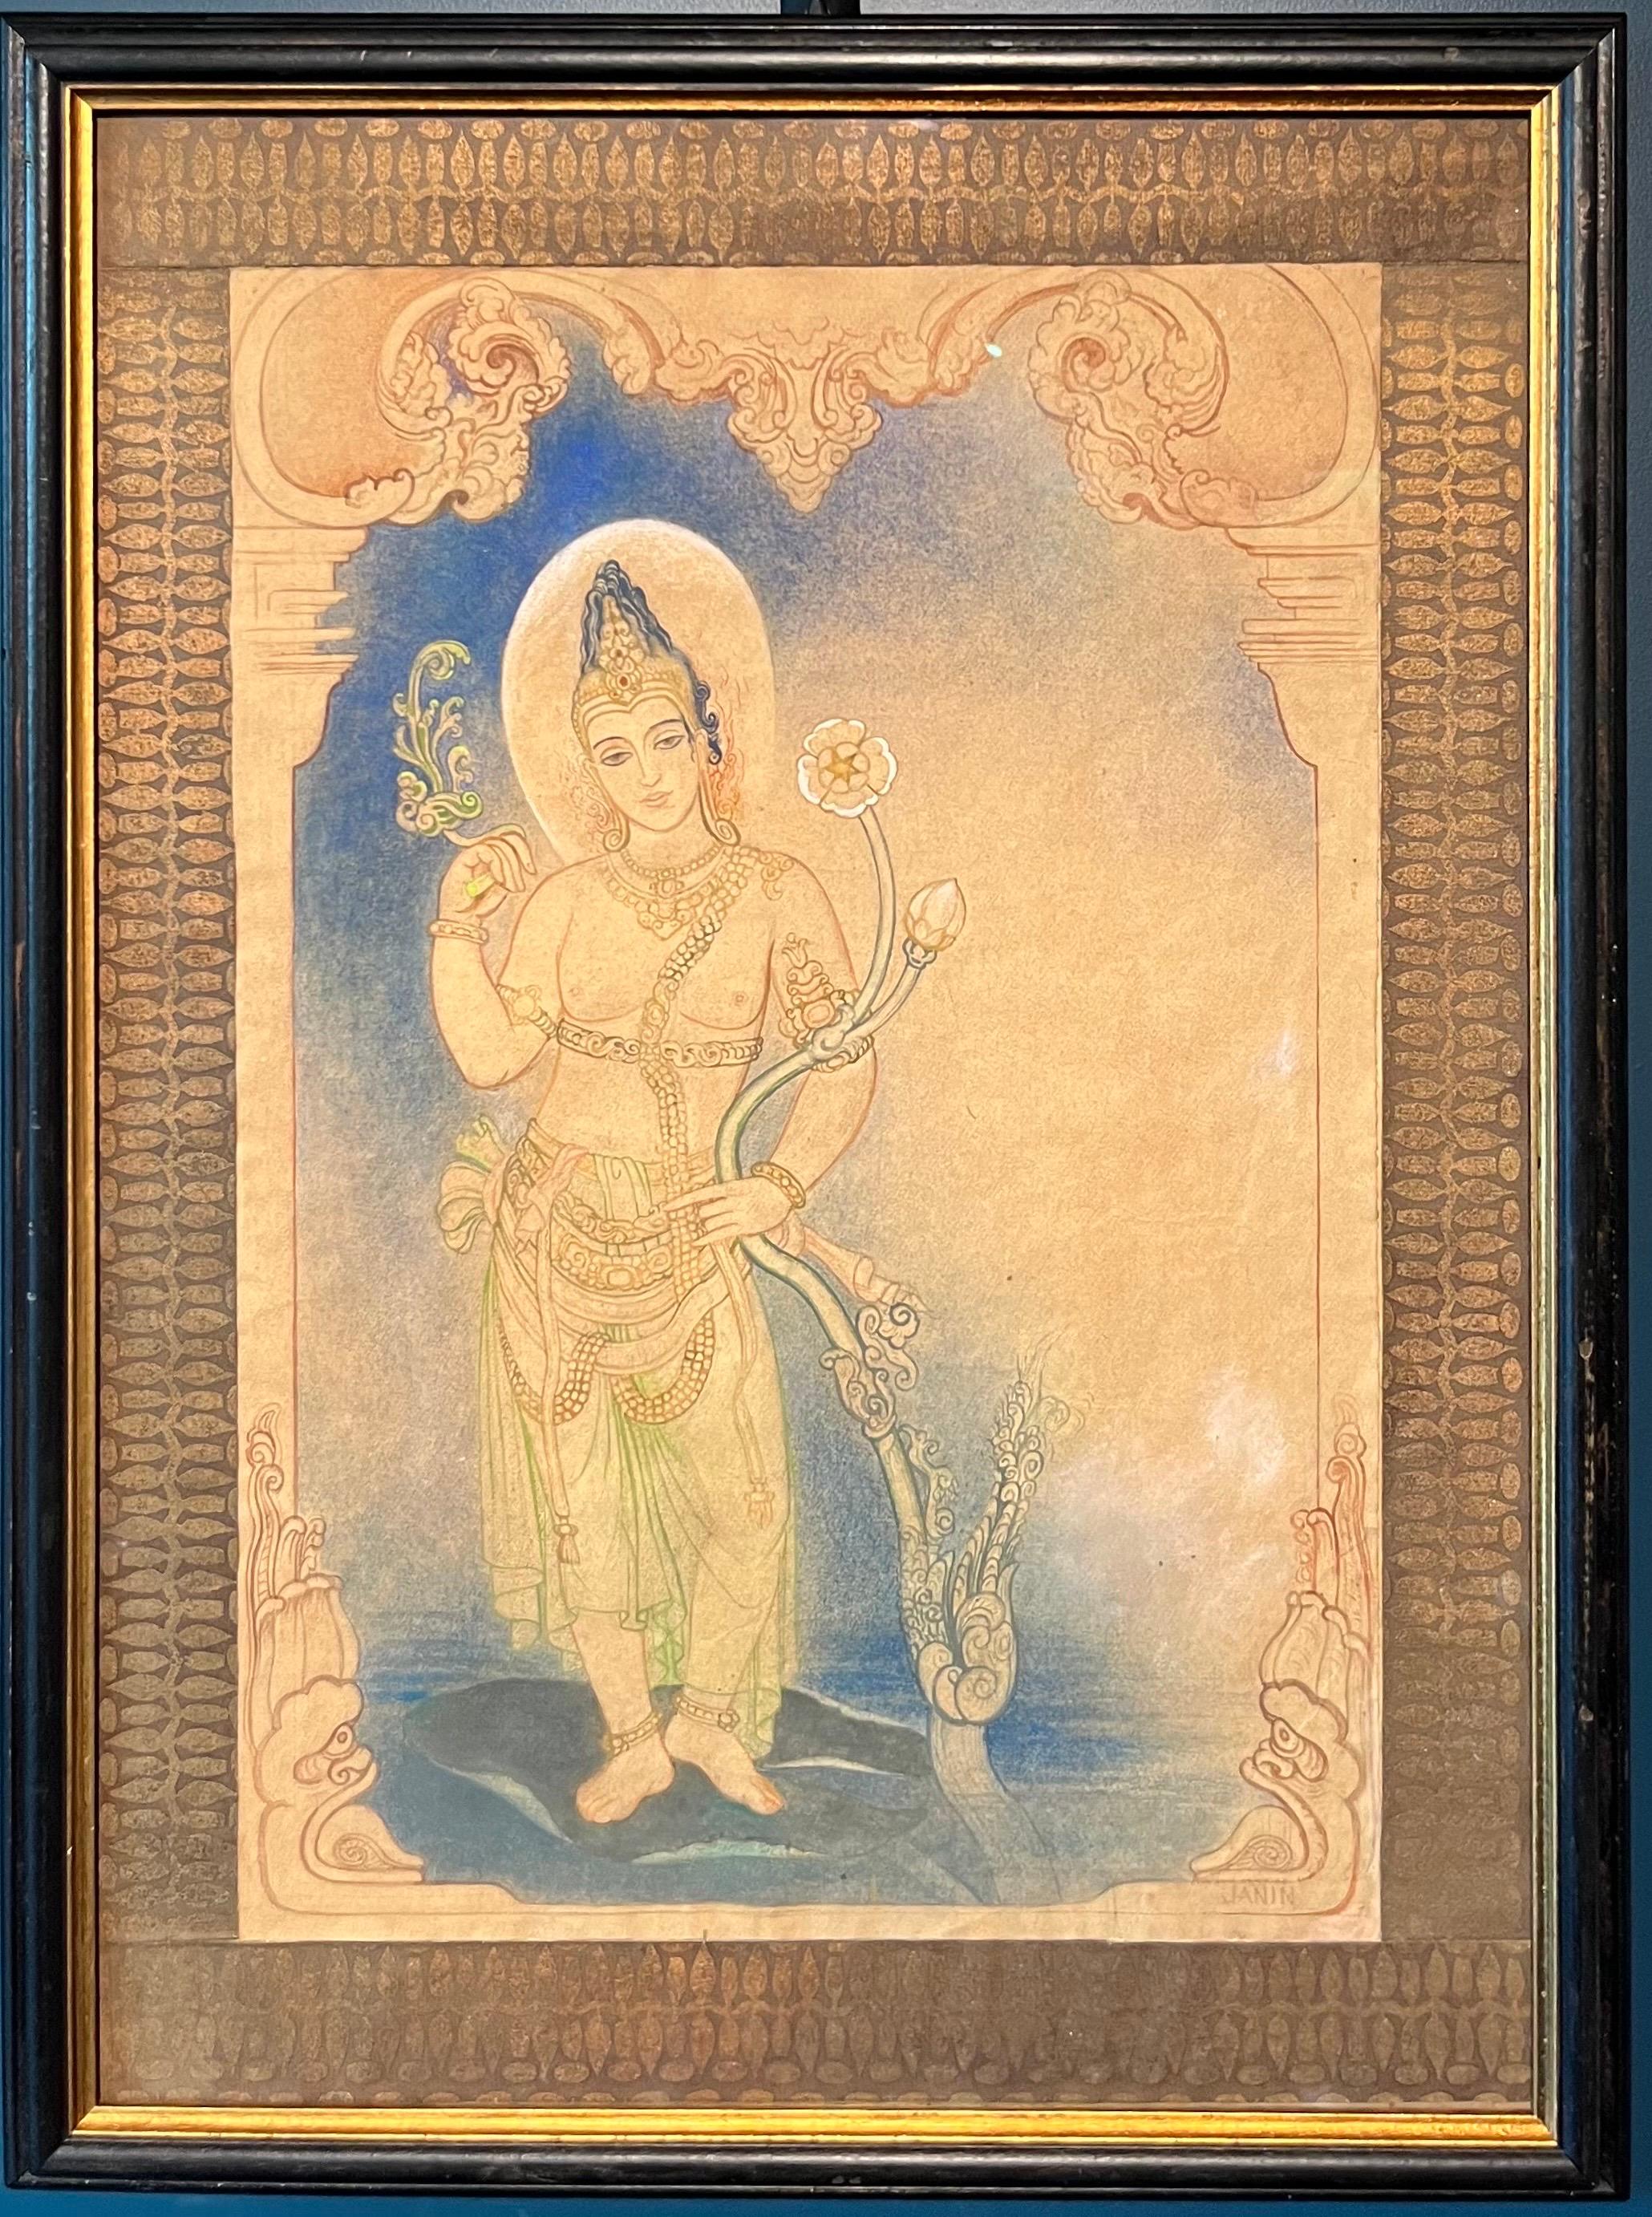 Louise Janin Nude - "Divinità induista" Tecnica mista su carta  cm. 48 x 33   1920 ca